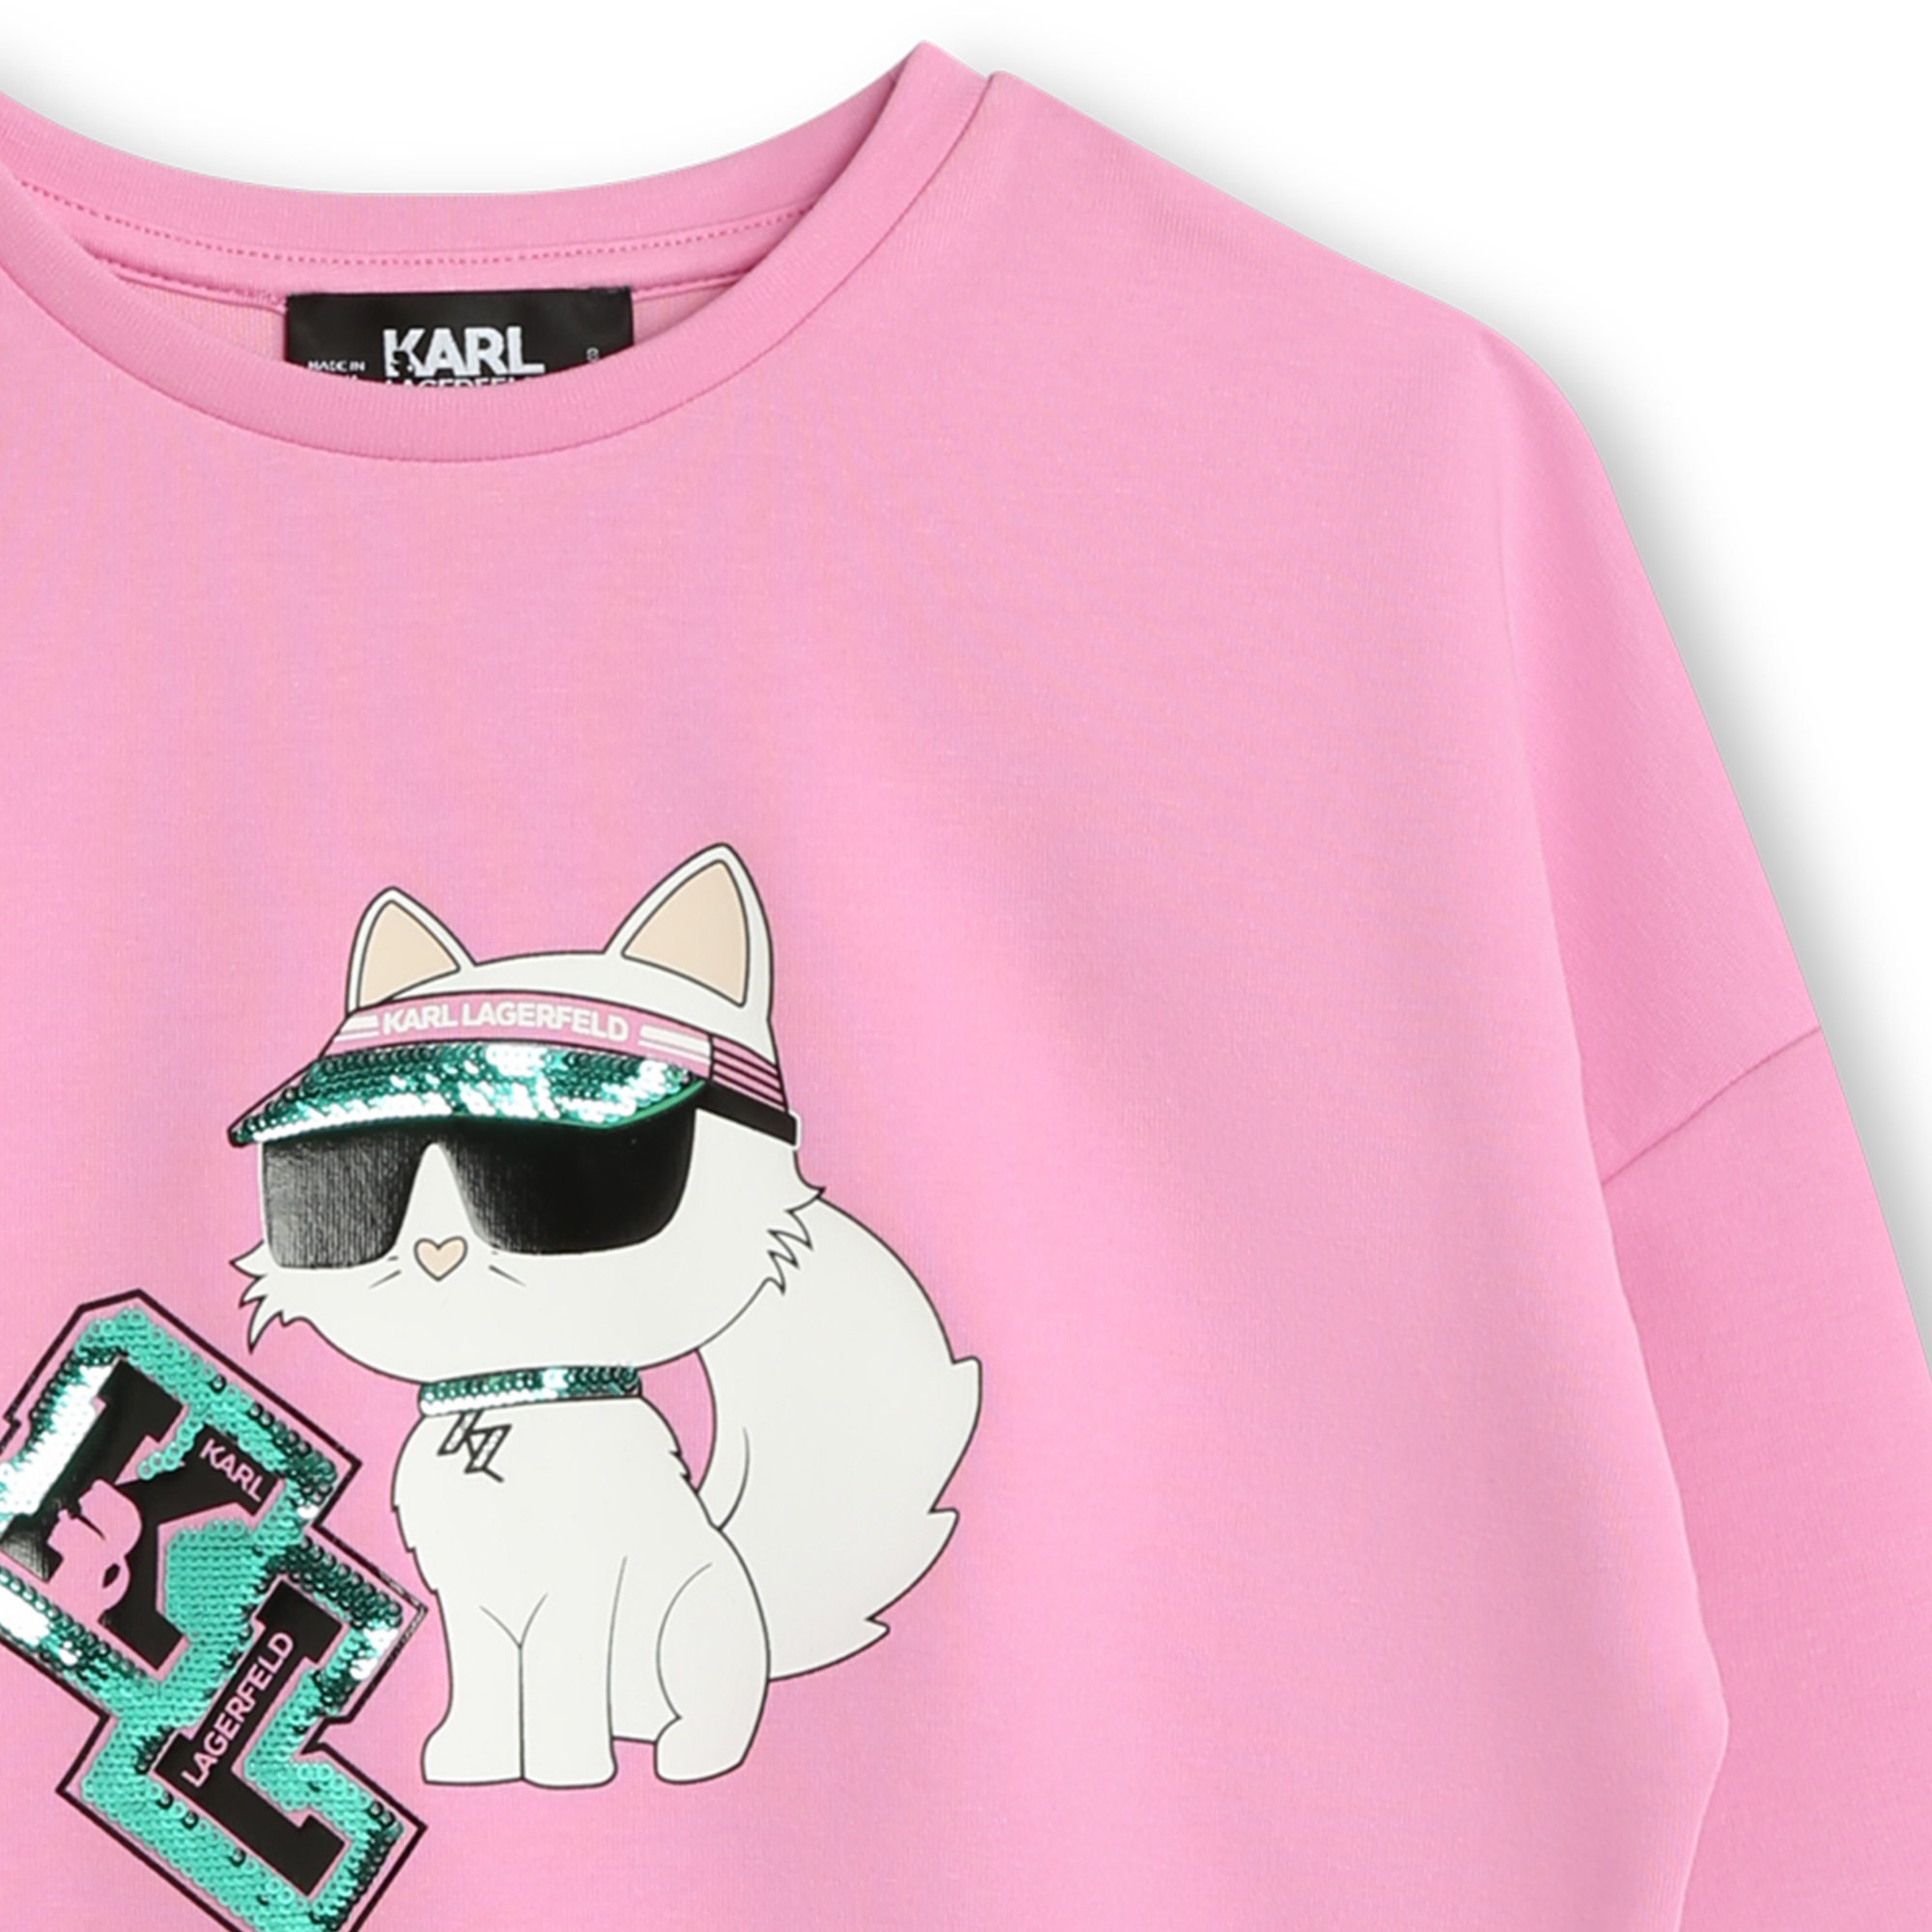 Printed sequin sweatshirt KARL LAGERFELD KIDS for GIRL